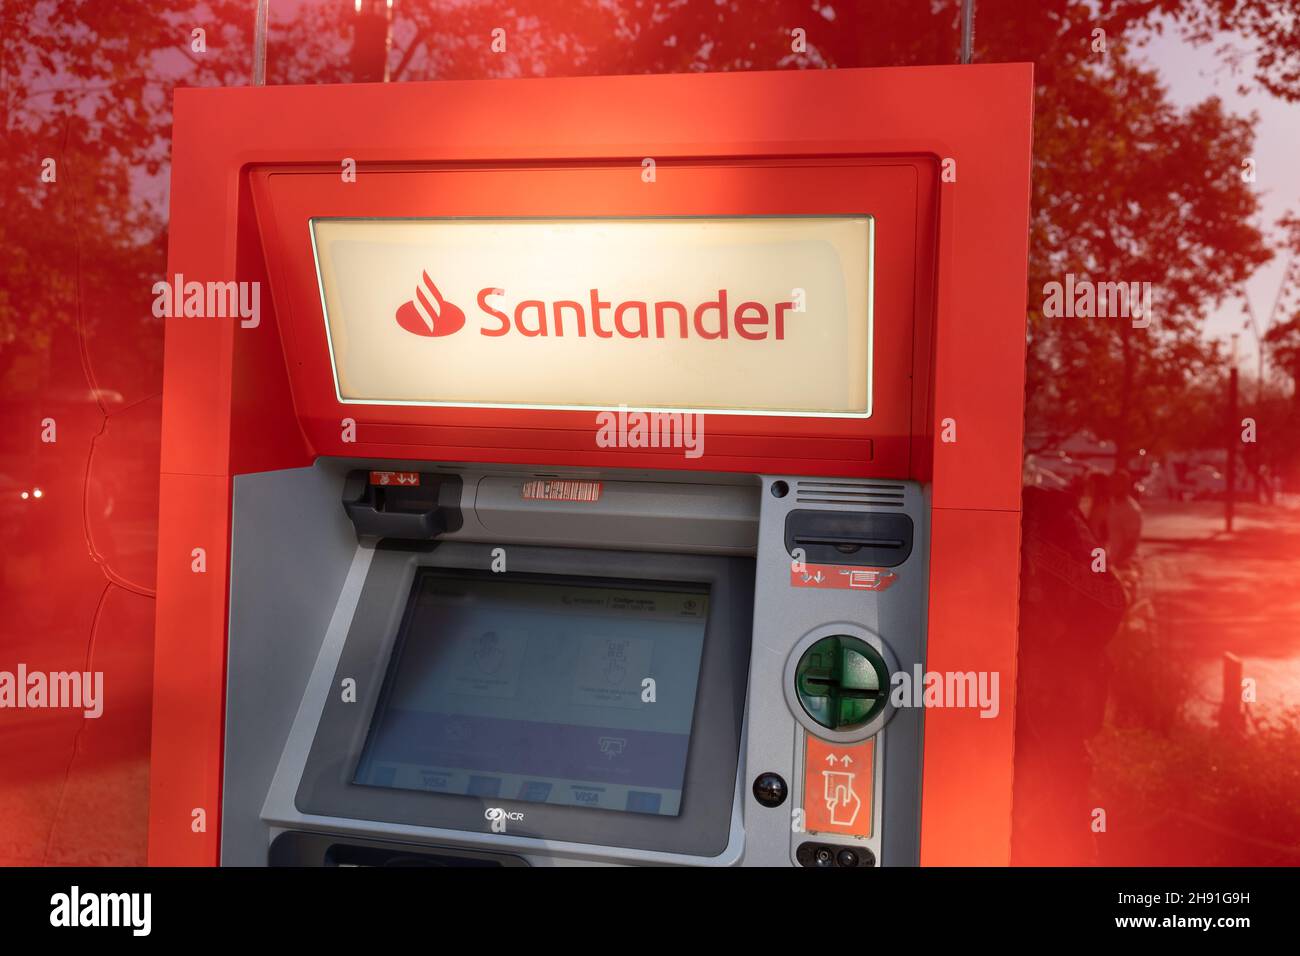 Barcelona, España - 5 de noviembre de 2021: Banco Santander ATM al aire libre, Editorial ilustrativa. Foto de stock